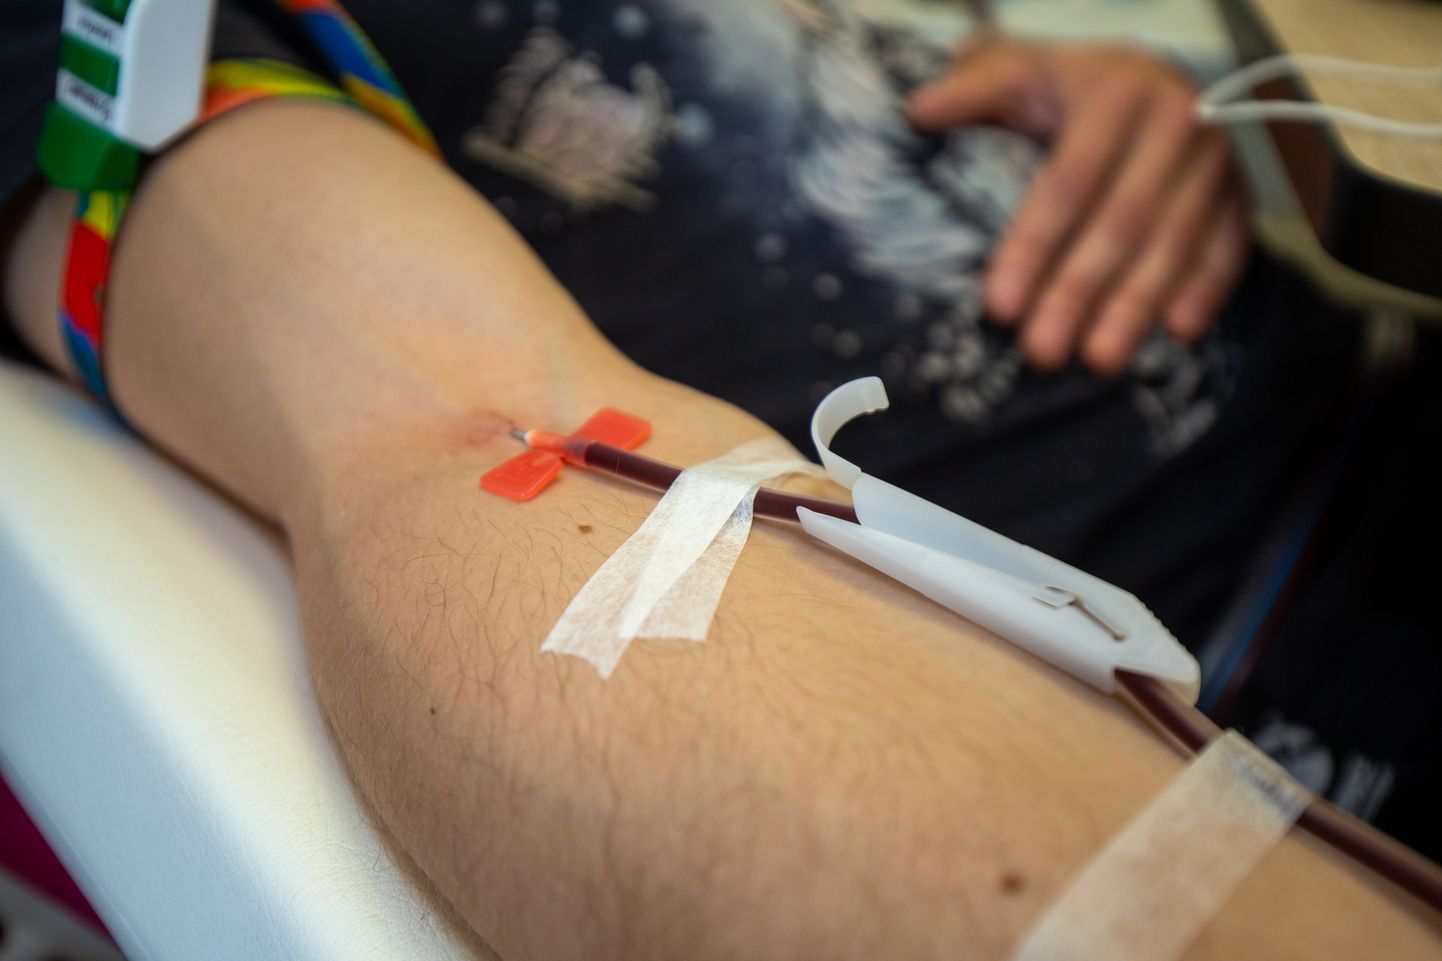 Tartu ülikooli kliinikumi verekeskuse juht Helve König kinnitas, et nad järgivad rangeid kvaliteedinõudeid, et nii vereloovutus kui ka loovutatud vere kasutamine oleks ohutu.